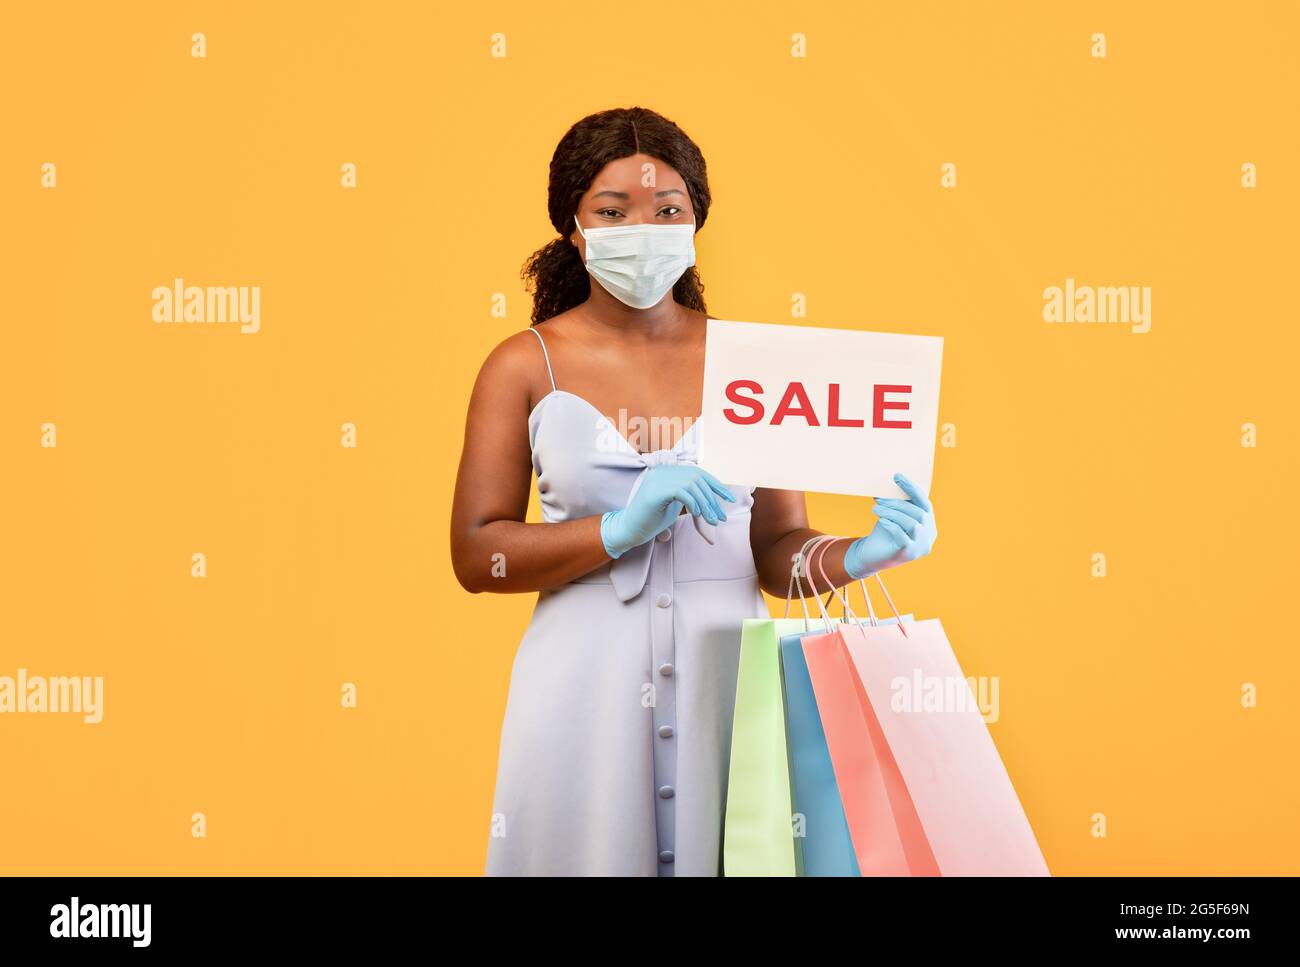 Pandemisches Einkaufen. Millennial schwarze Dame in Schutzmaske und Handschuhen zeigt VERKAUFSSCHILD an der Kamera, hält Einkaufstaschen, Kauf von Waren auf Discount Dur Stockfoto